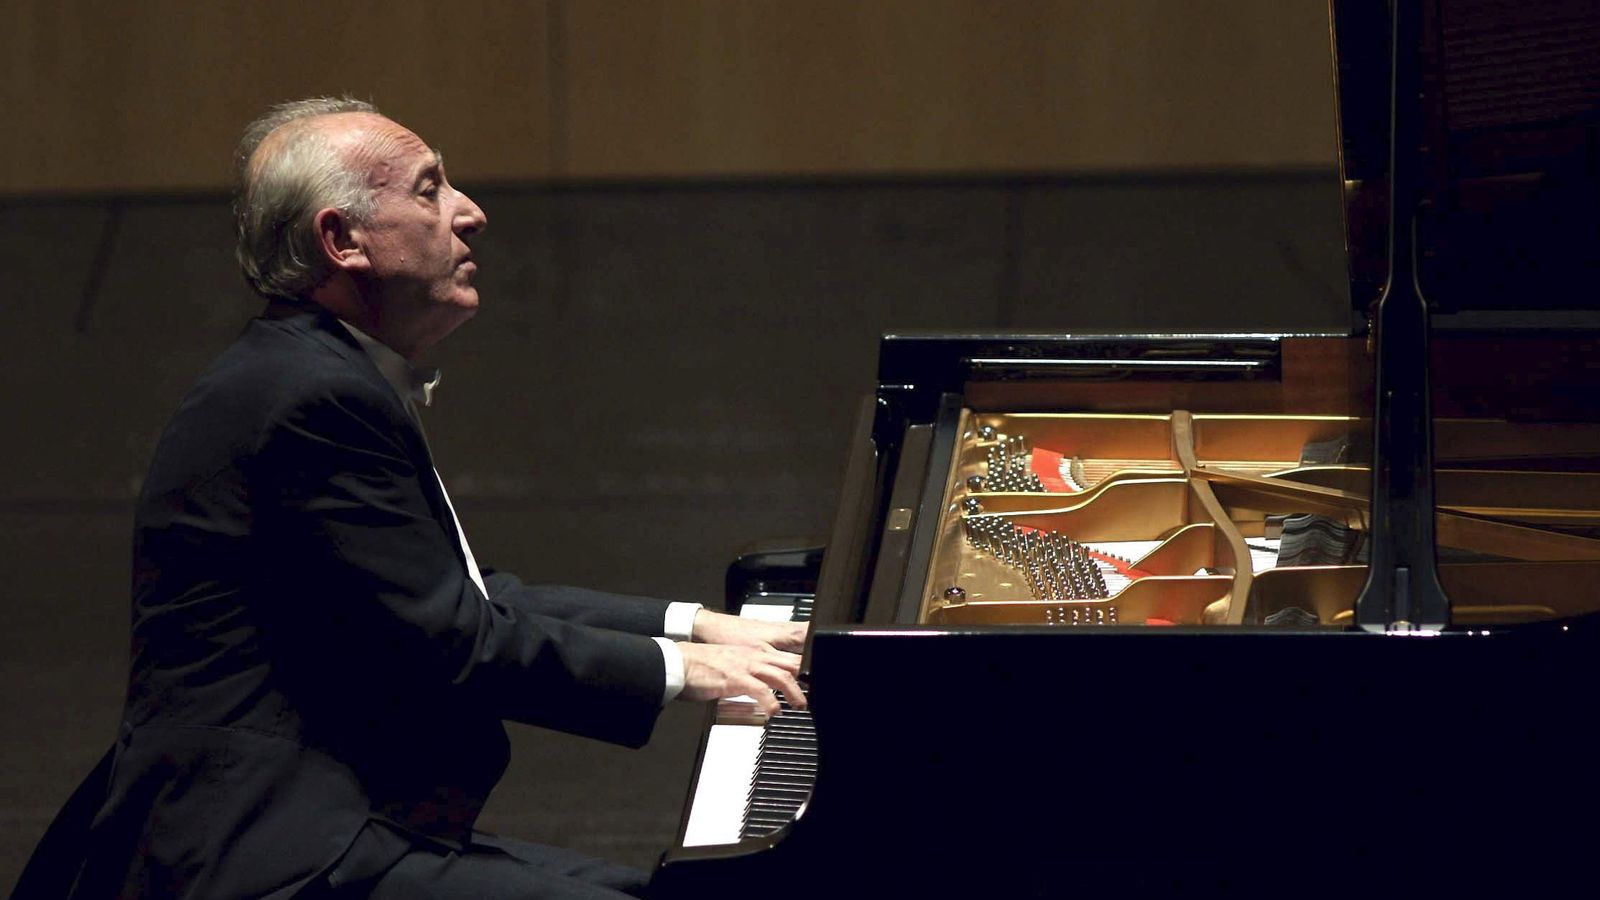 Fotografía del pianista Maurizio Pollini en el Teatro Real. (EFE)